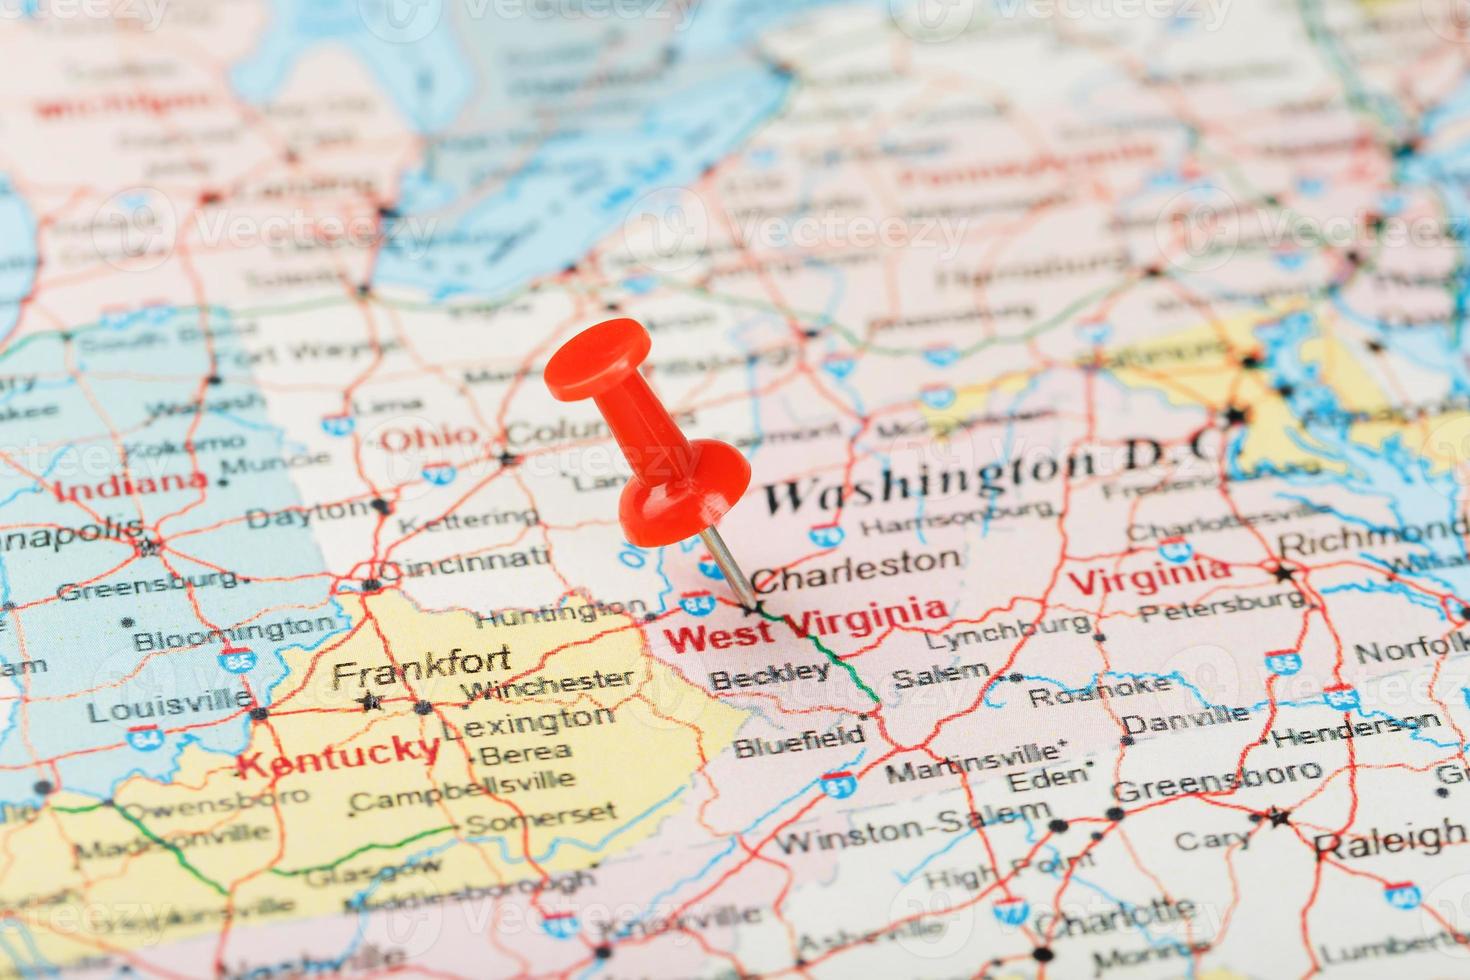 aguja clerical roja en un mapa de estados unidos, suroeste de virginia y la capital charleston. Cerrar mapa del suroeste de Virginia con tachuela roja foto